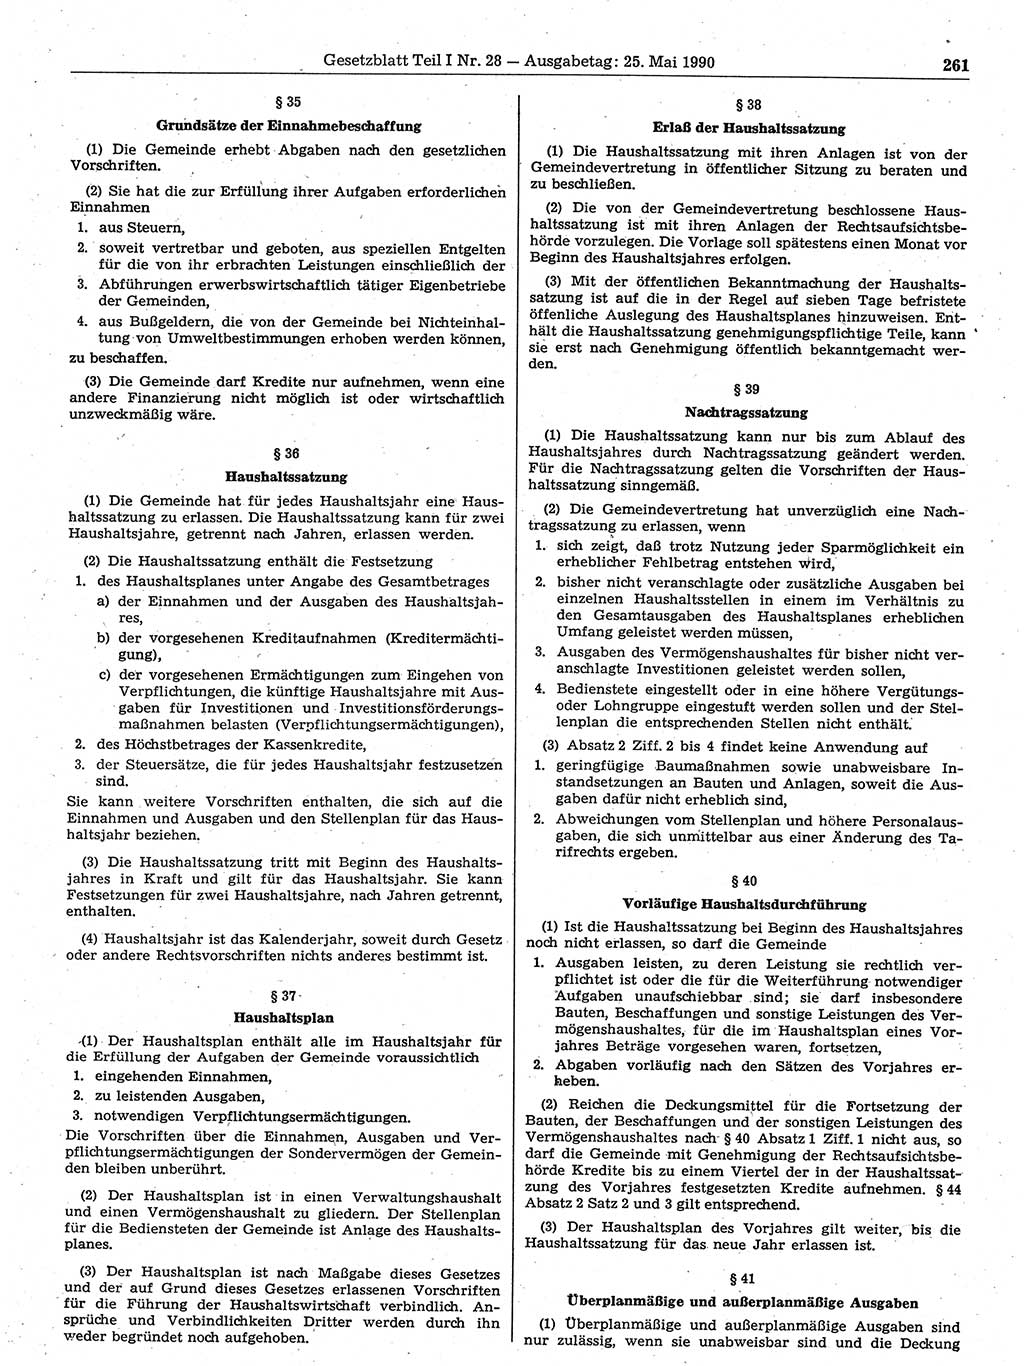 Gesetzblatt (GBl.) der Deutschen Demokratischen Republik (DDR) Teil Ⅰ 1990, Seite 261 (GBl. DDR Ⅰ 1990, S. 261)